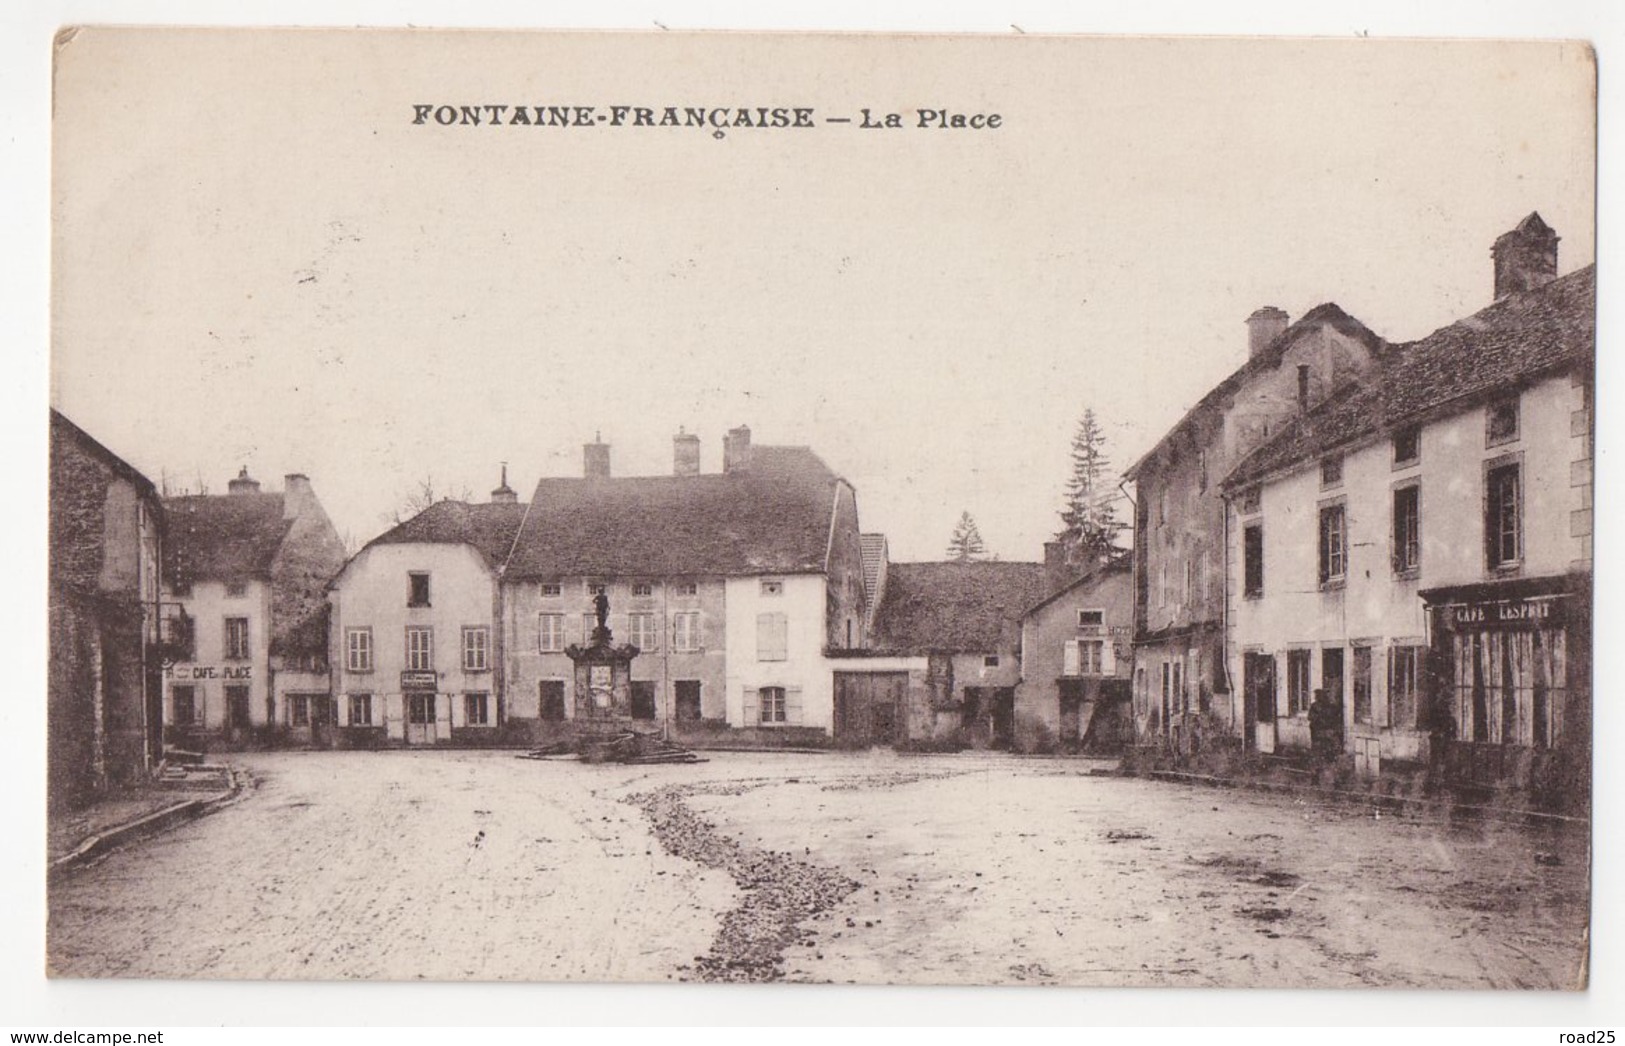 ( 21 ) Lot de 66 cartes postales anciennes du département de la Côte d'Or